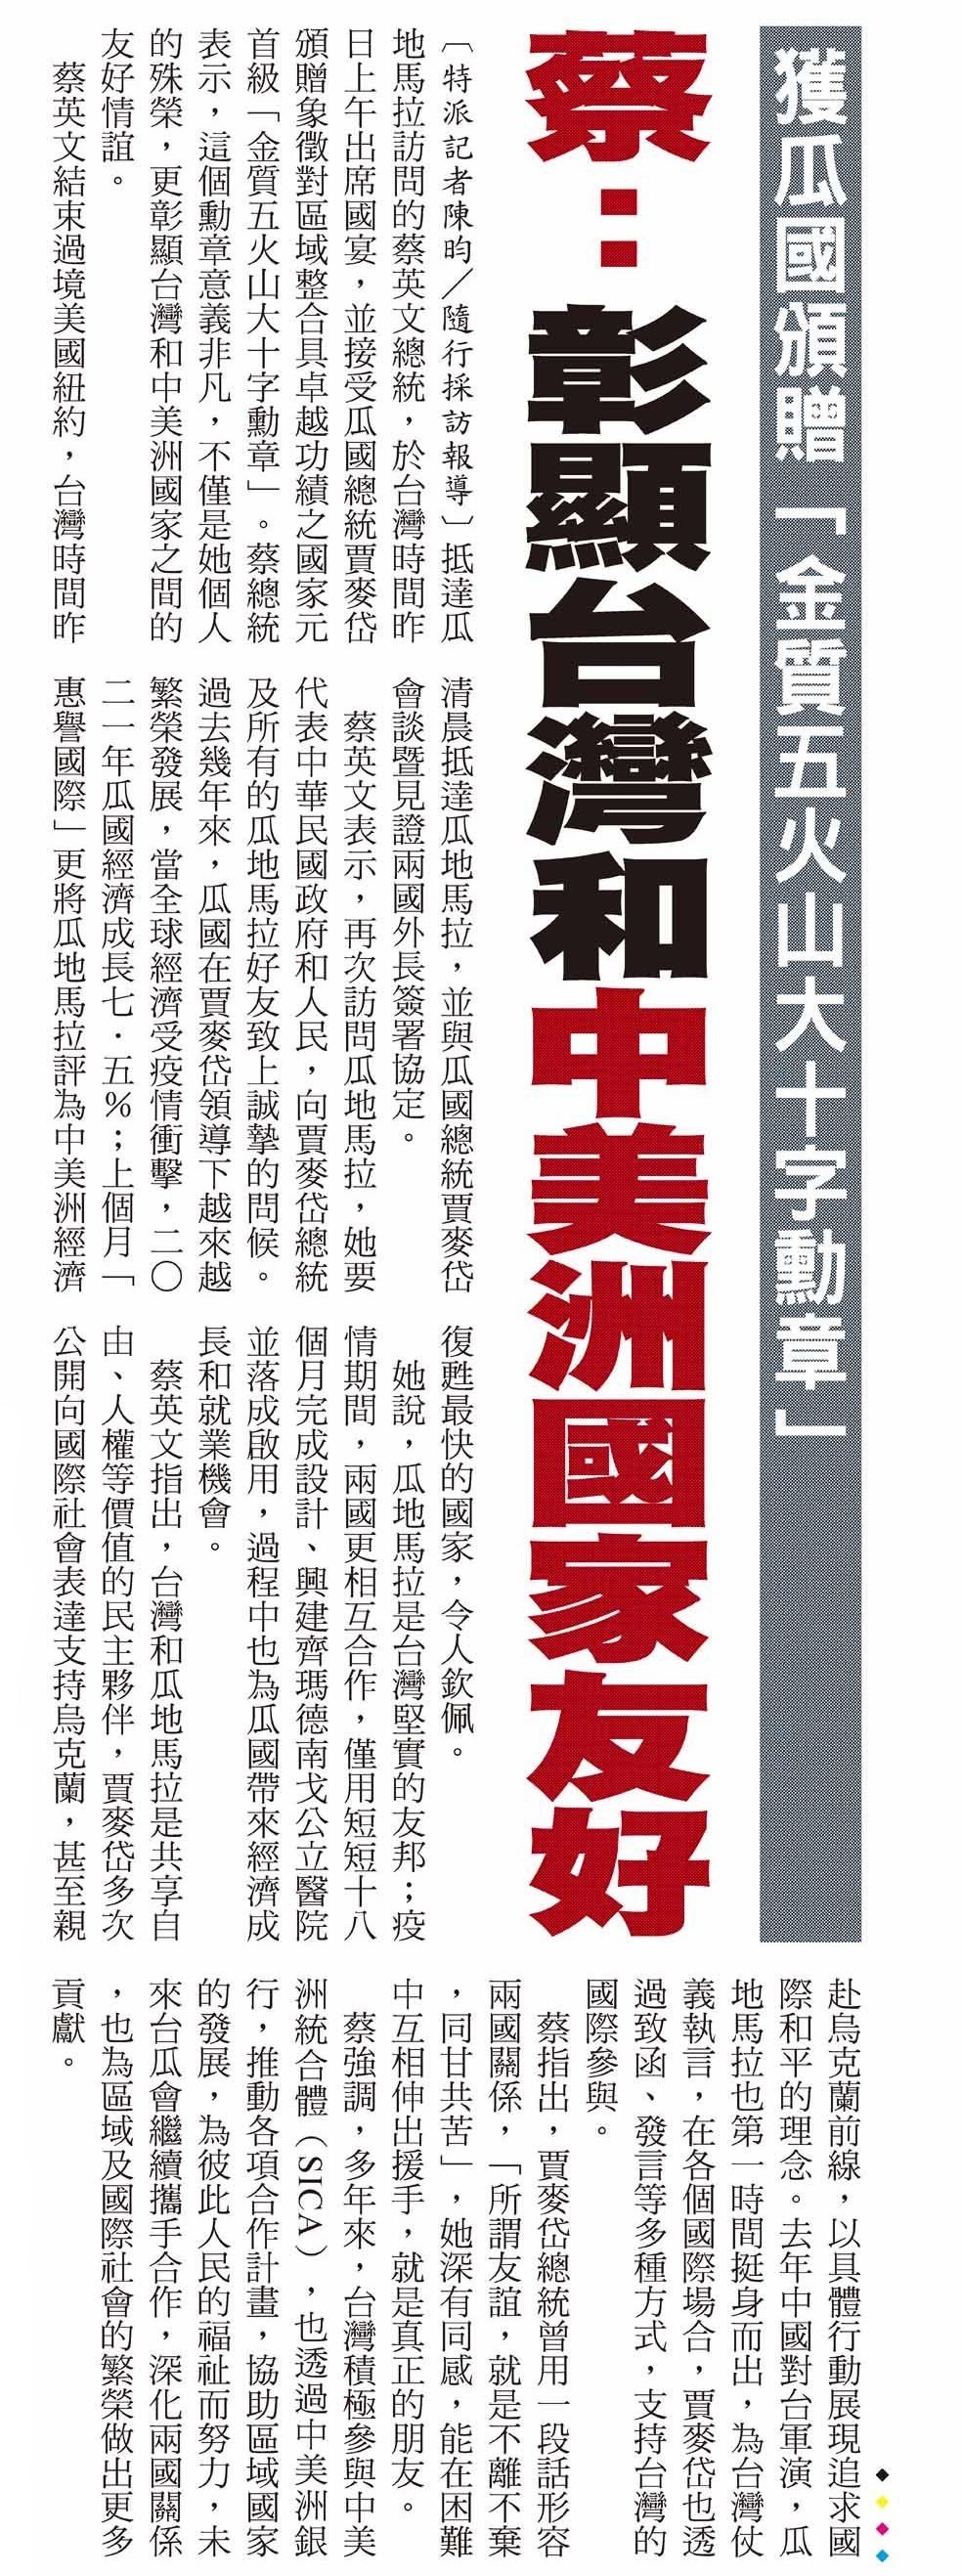 Recepción de la condecoración de la Orden de los Cinco Volcanes en el grado de Gran Cruz, Placa de Oro Presidenta Tsai: Esta condecoración es una muestra de la amistad entre Taiwán y Centroamérica